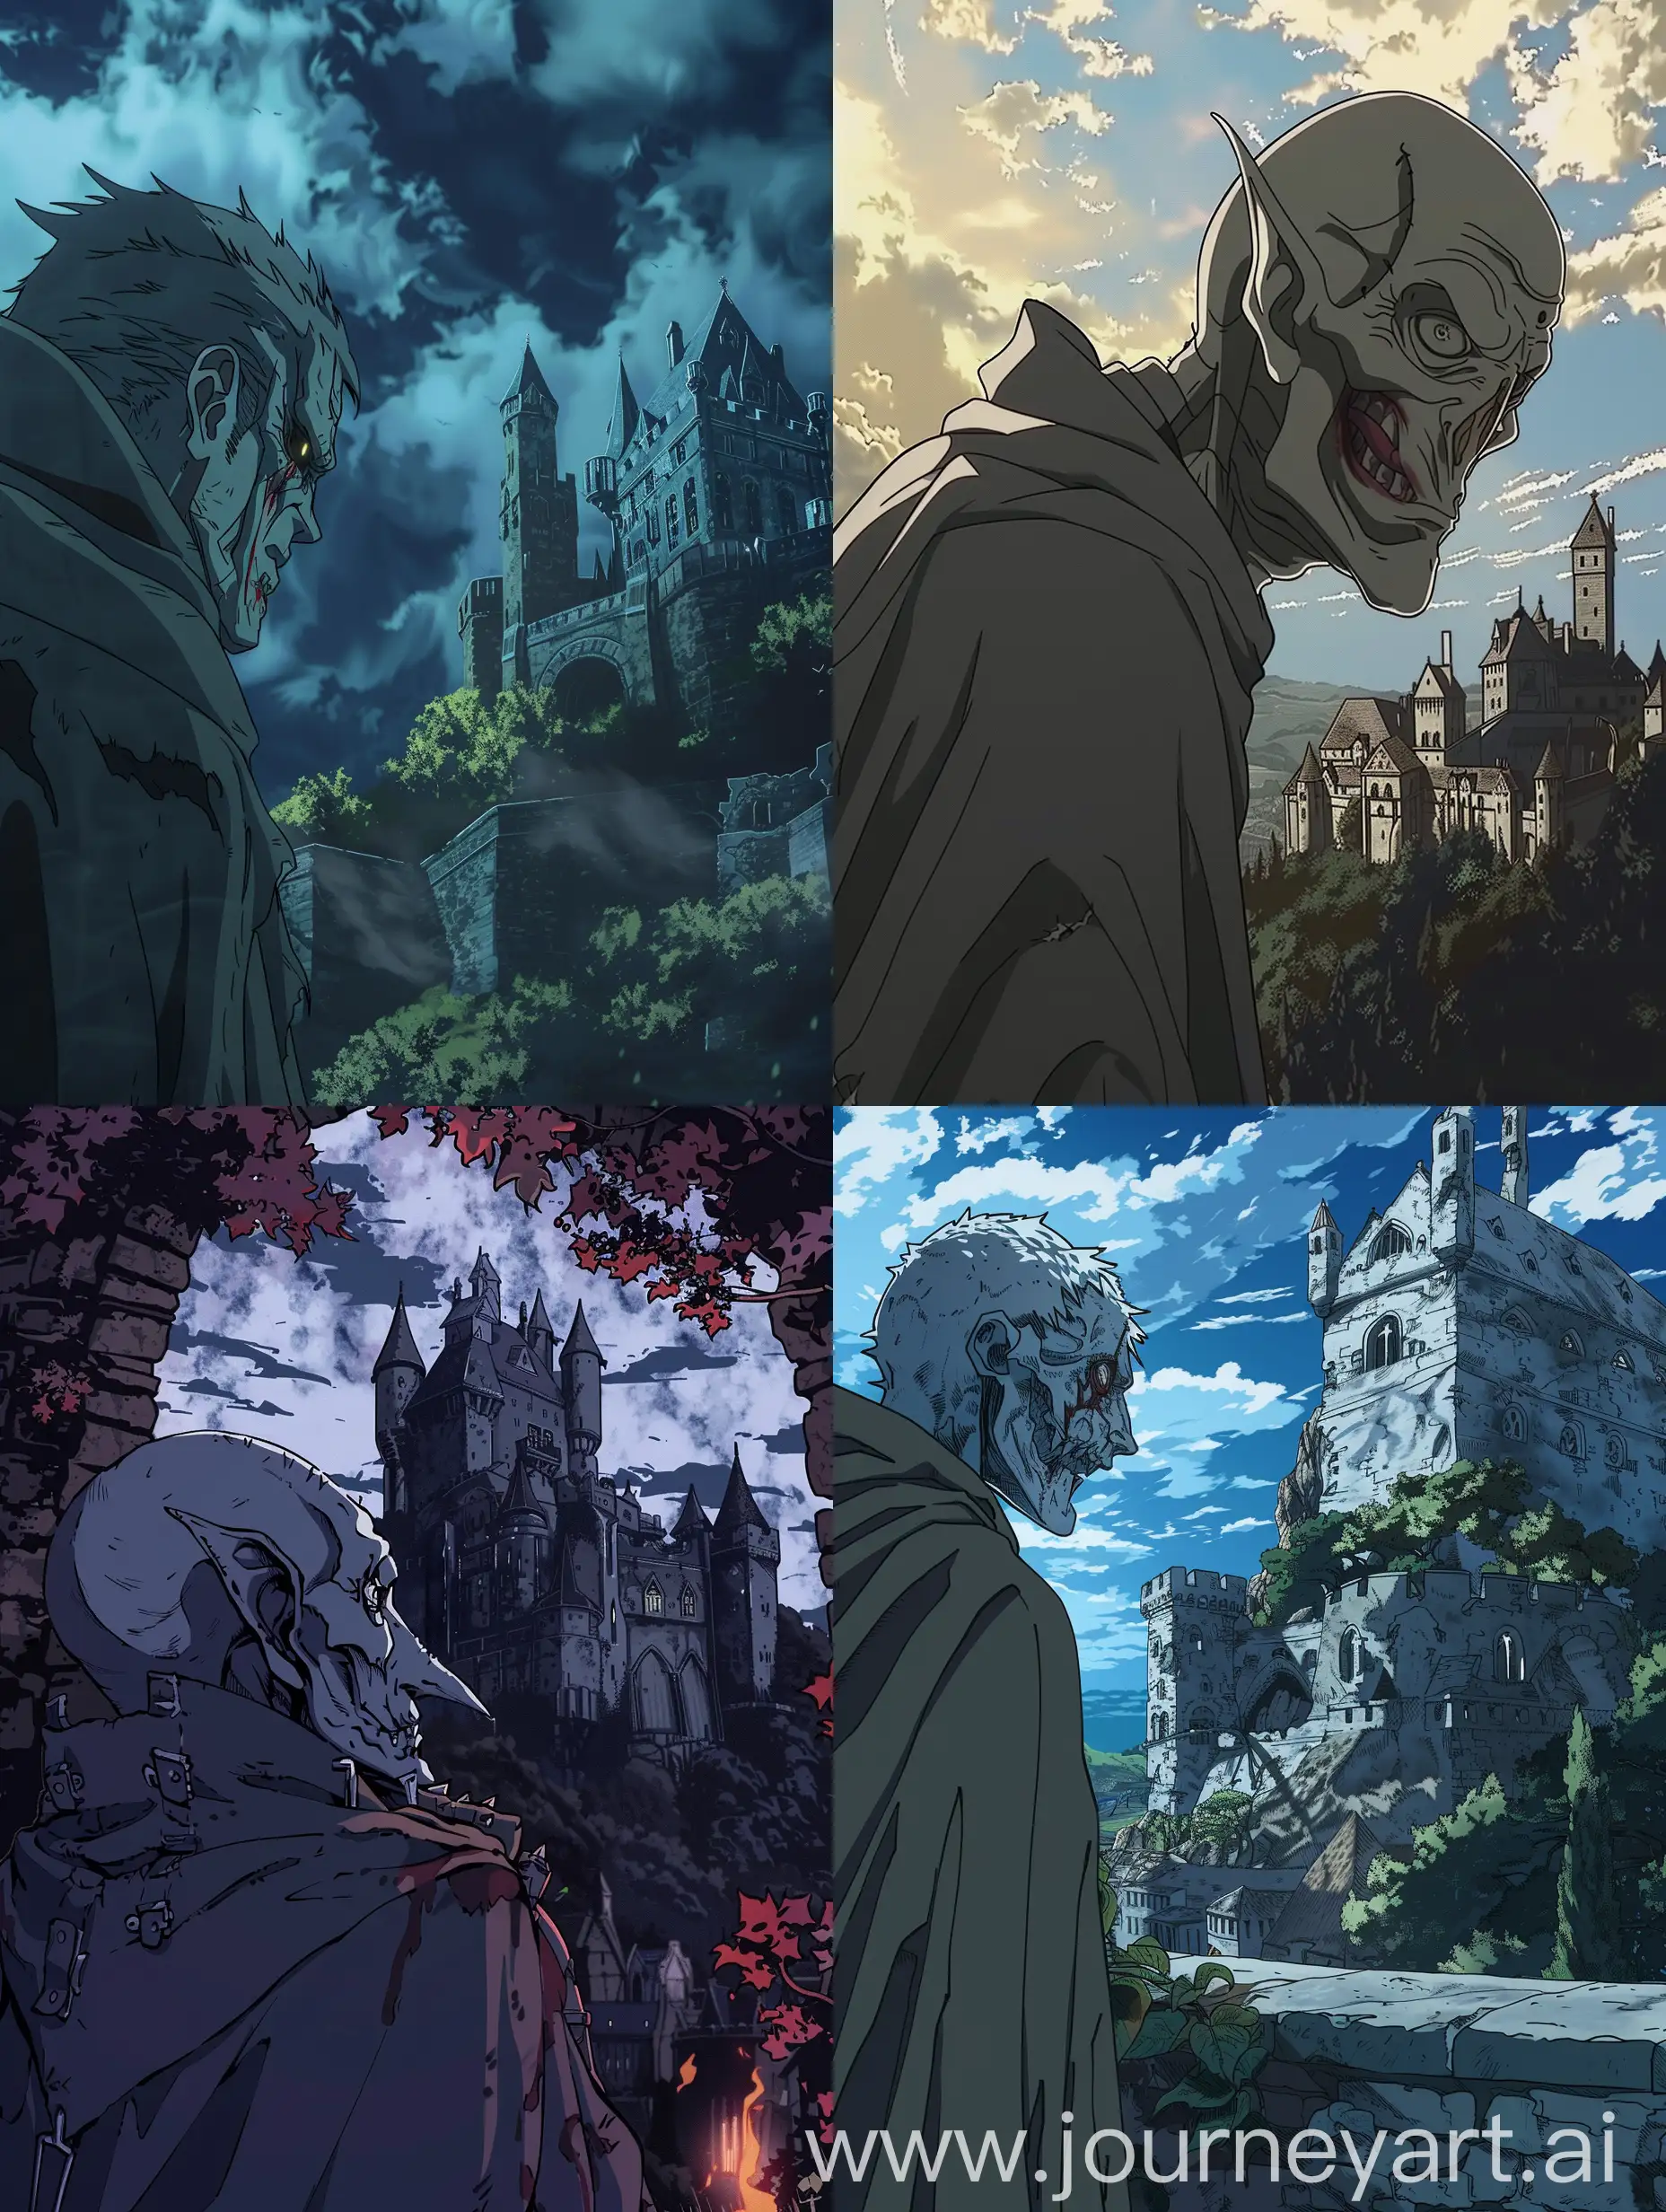 демон с серым цветом кожи смотрит на замок с лицом в котором чувствуется жажда крови а еще он в плаще в аниме стиле